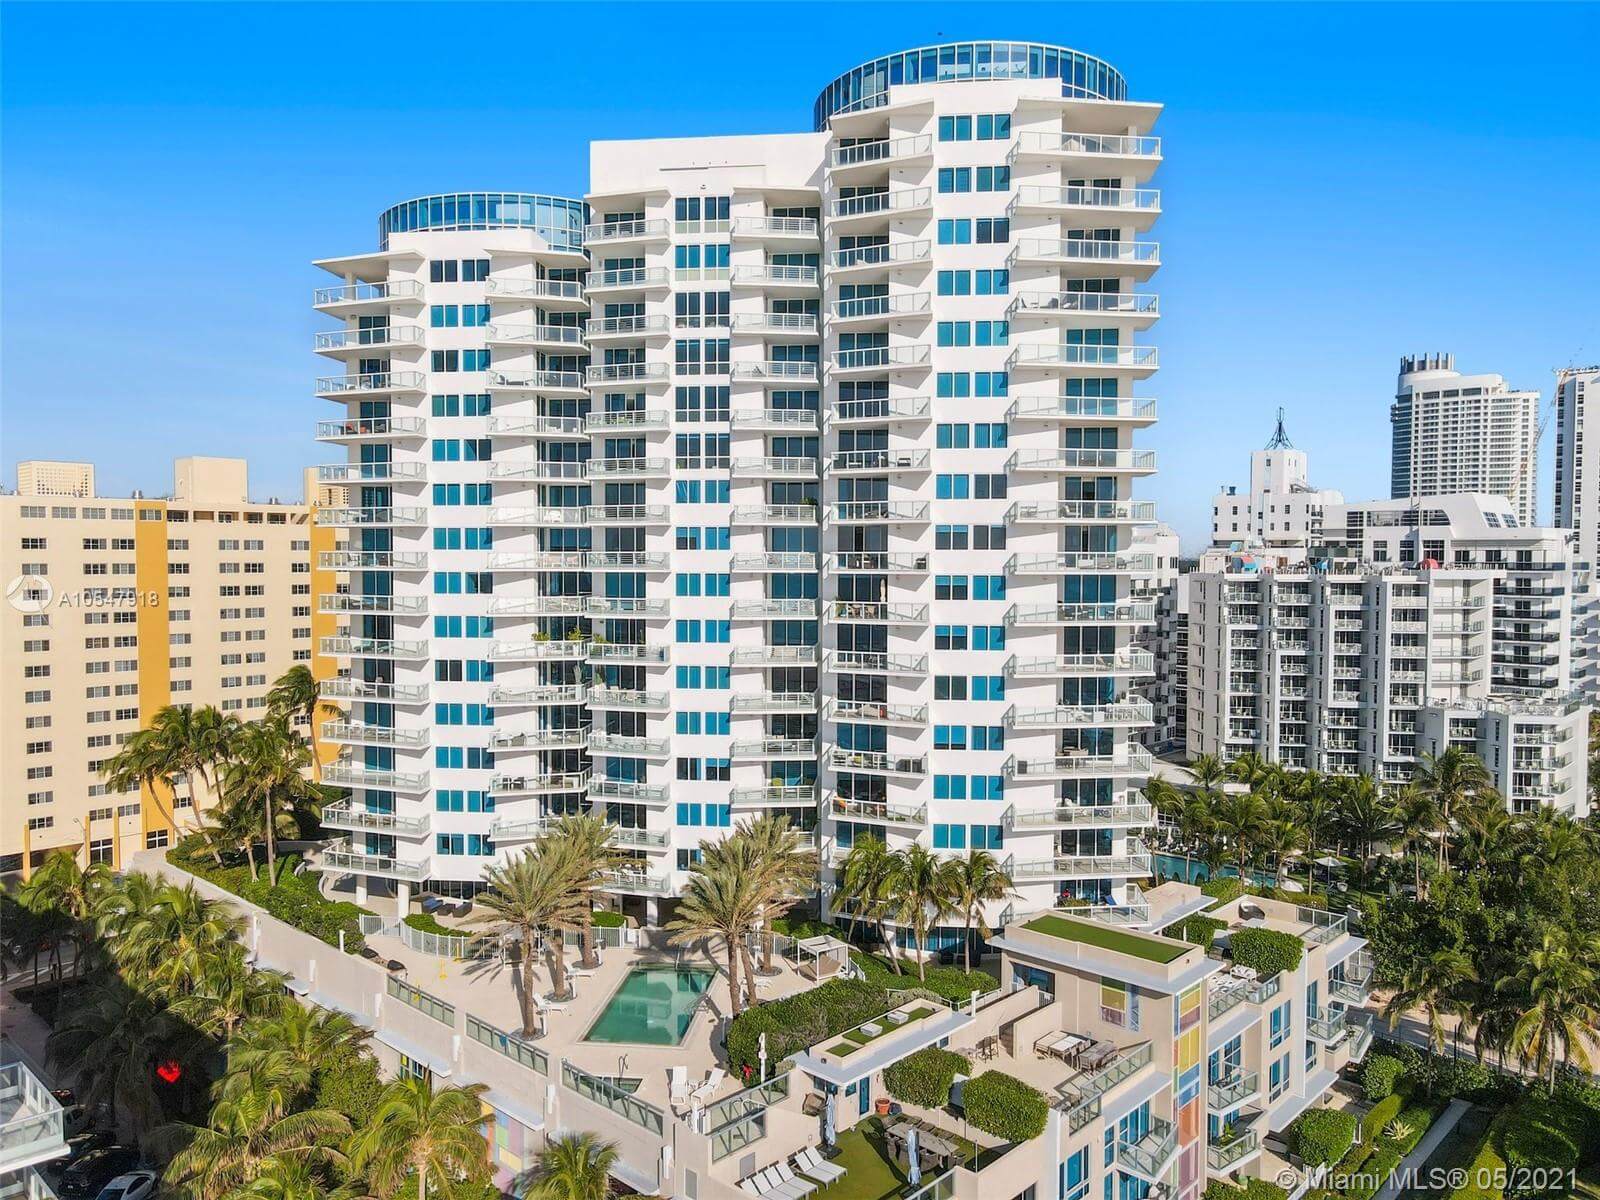 Mosaic Miami Beach Building View